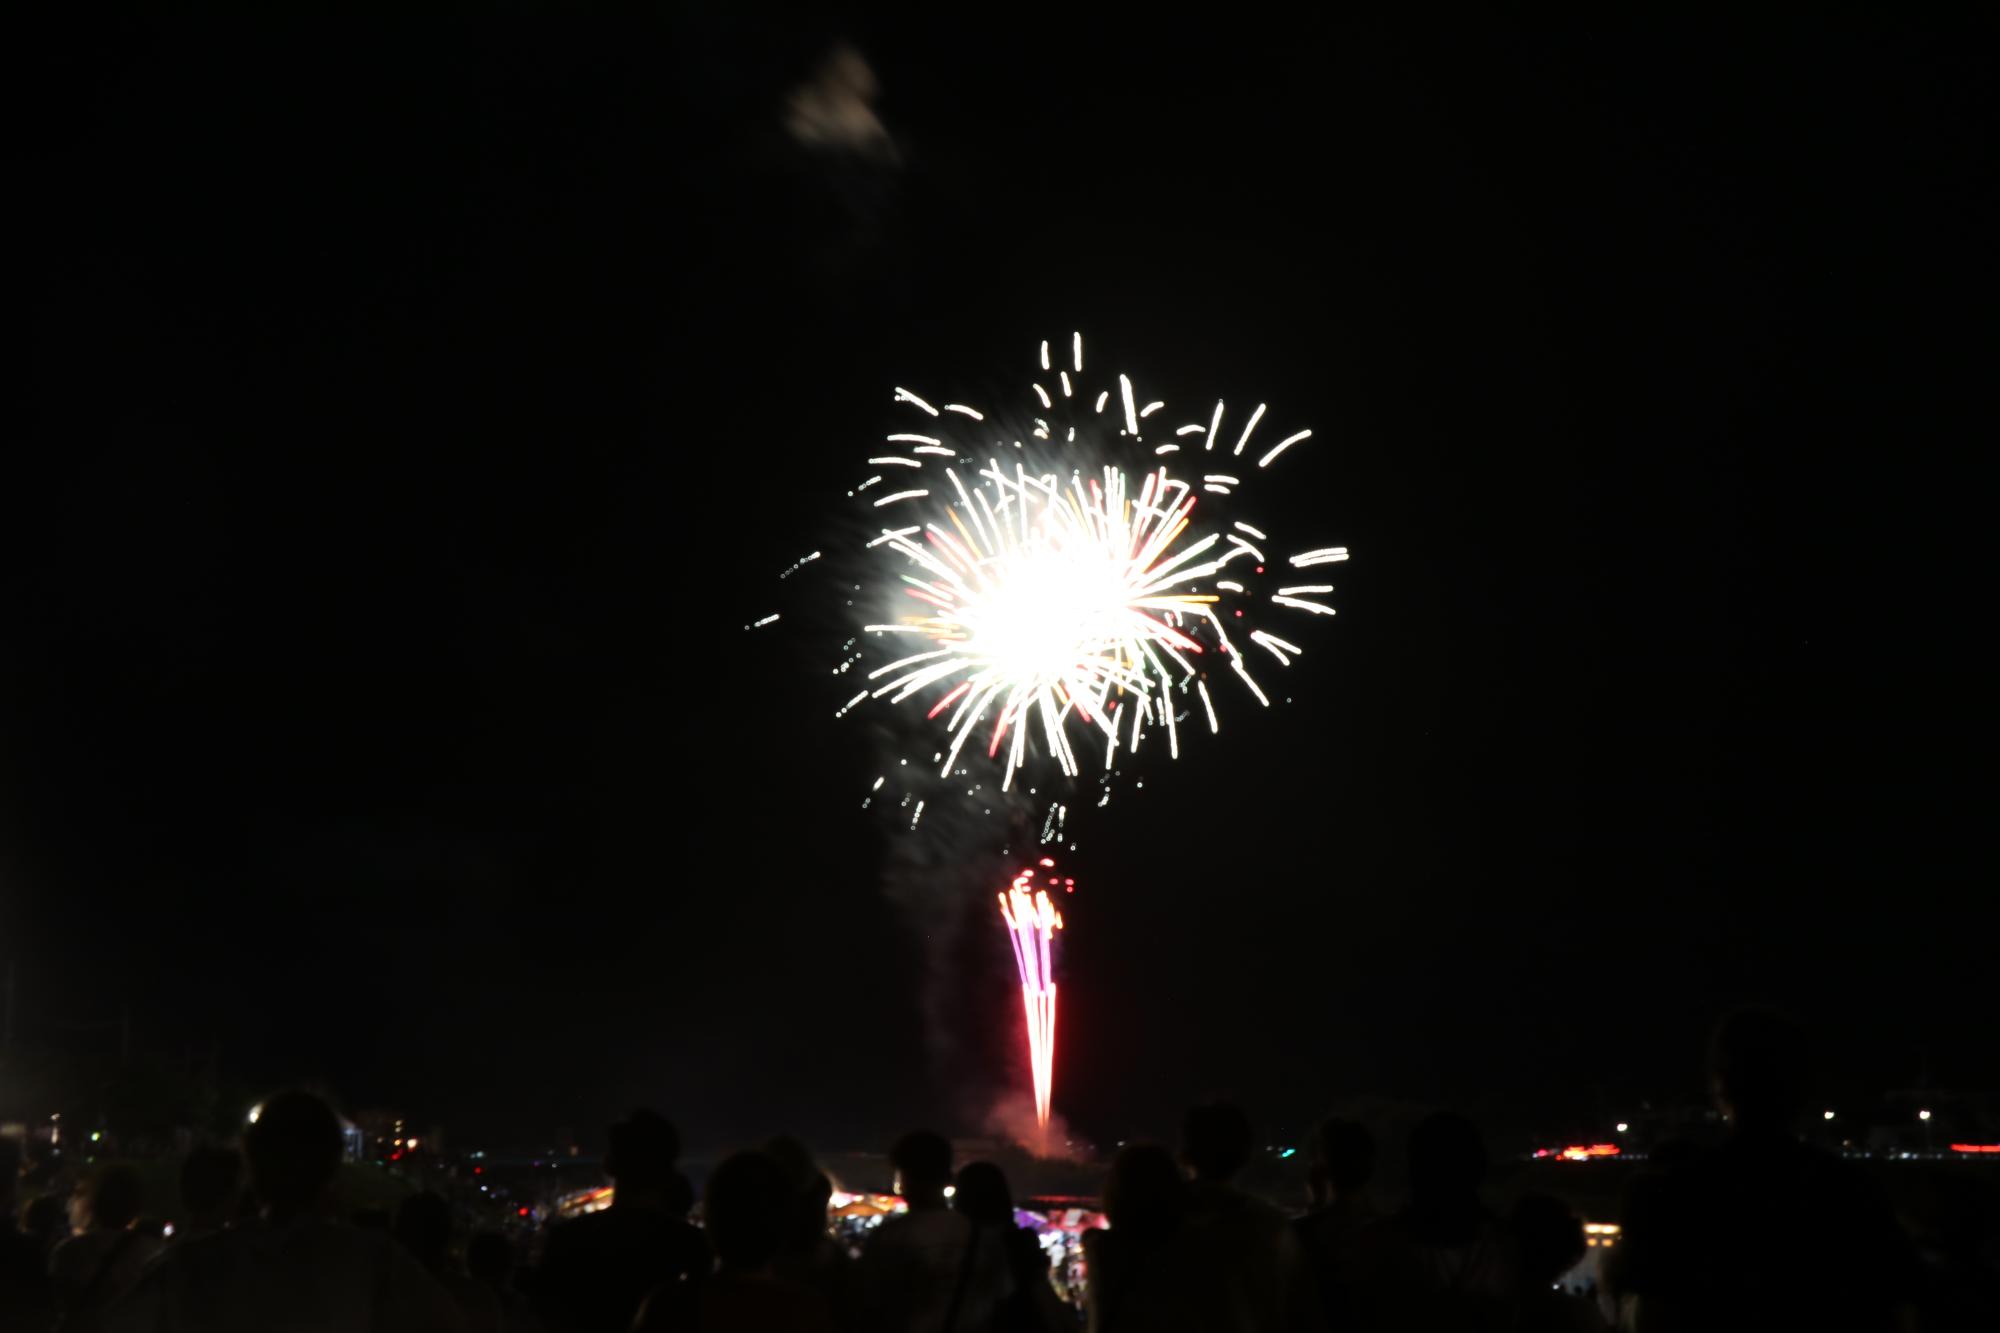 揖保川近くで打ち上げられた花火の写真